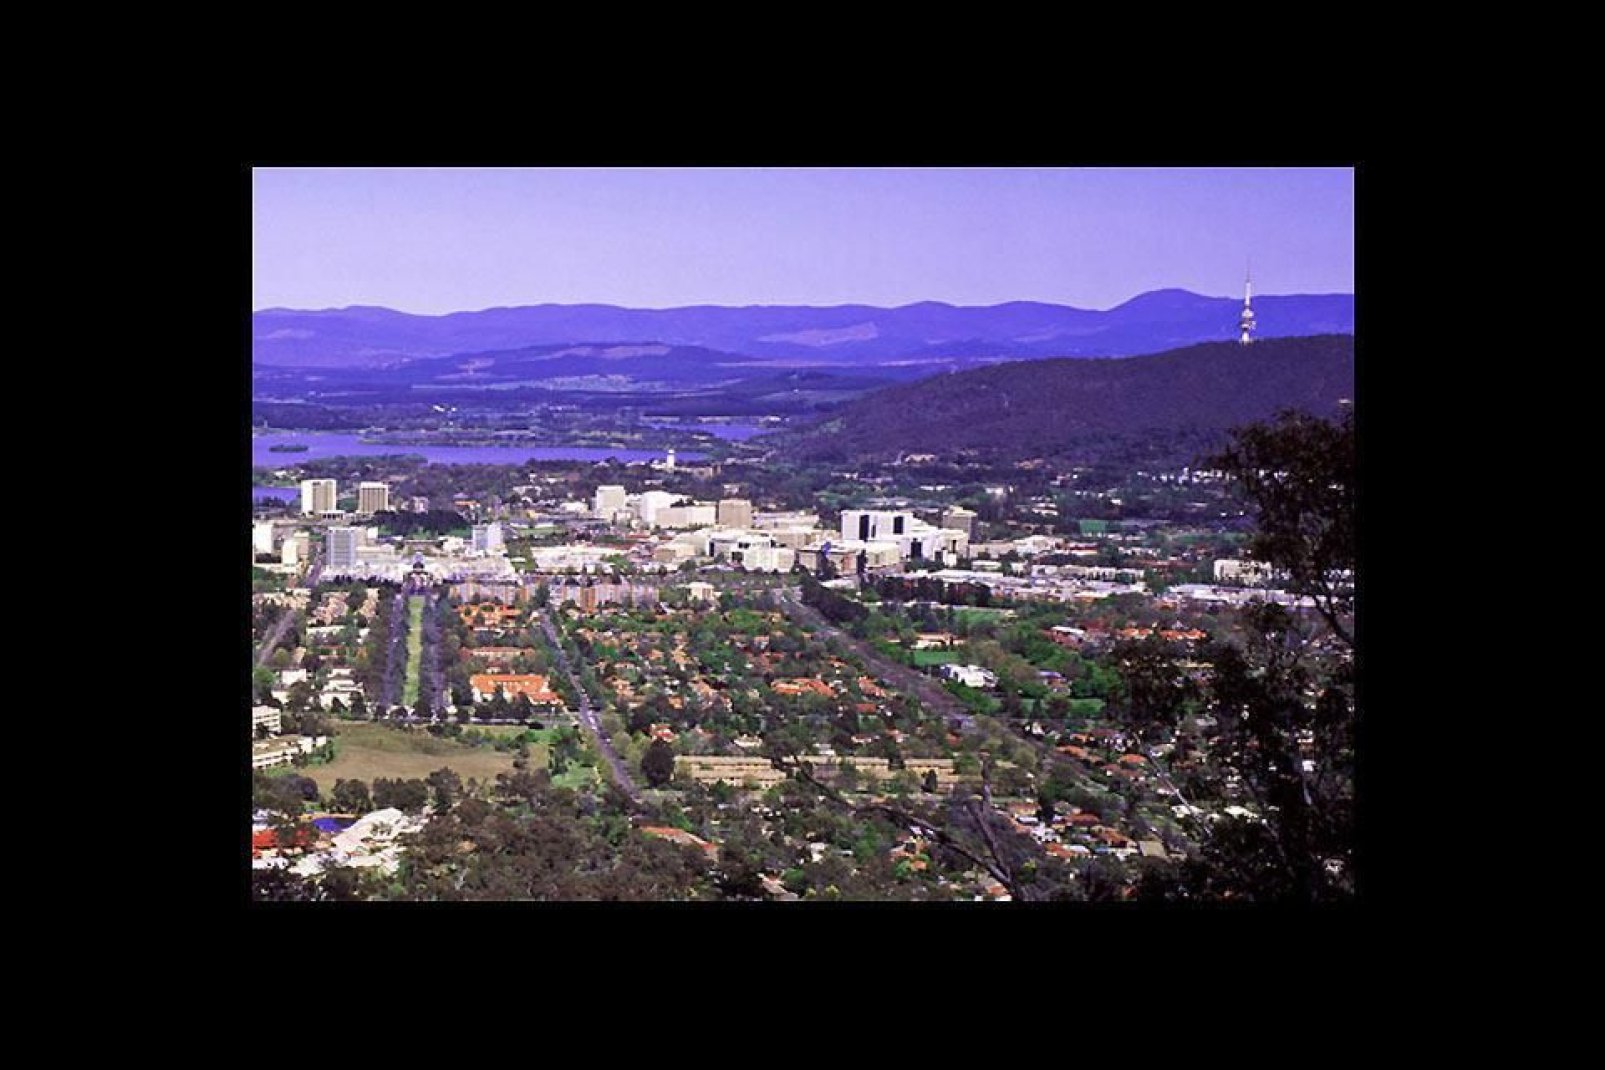 Canberra würde diesen Namen wirklich verdienen, da die Stadt zahlreiche Grünflächen zu bieten hat.